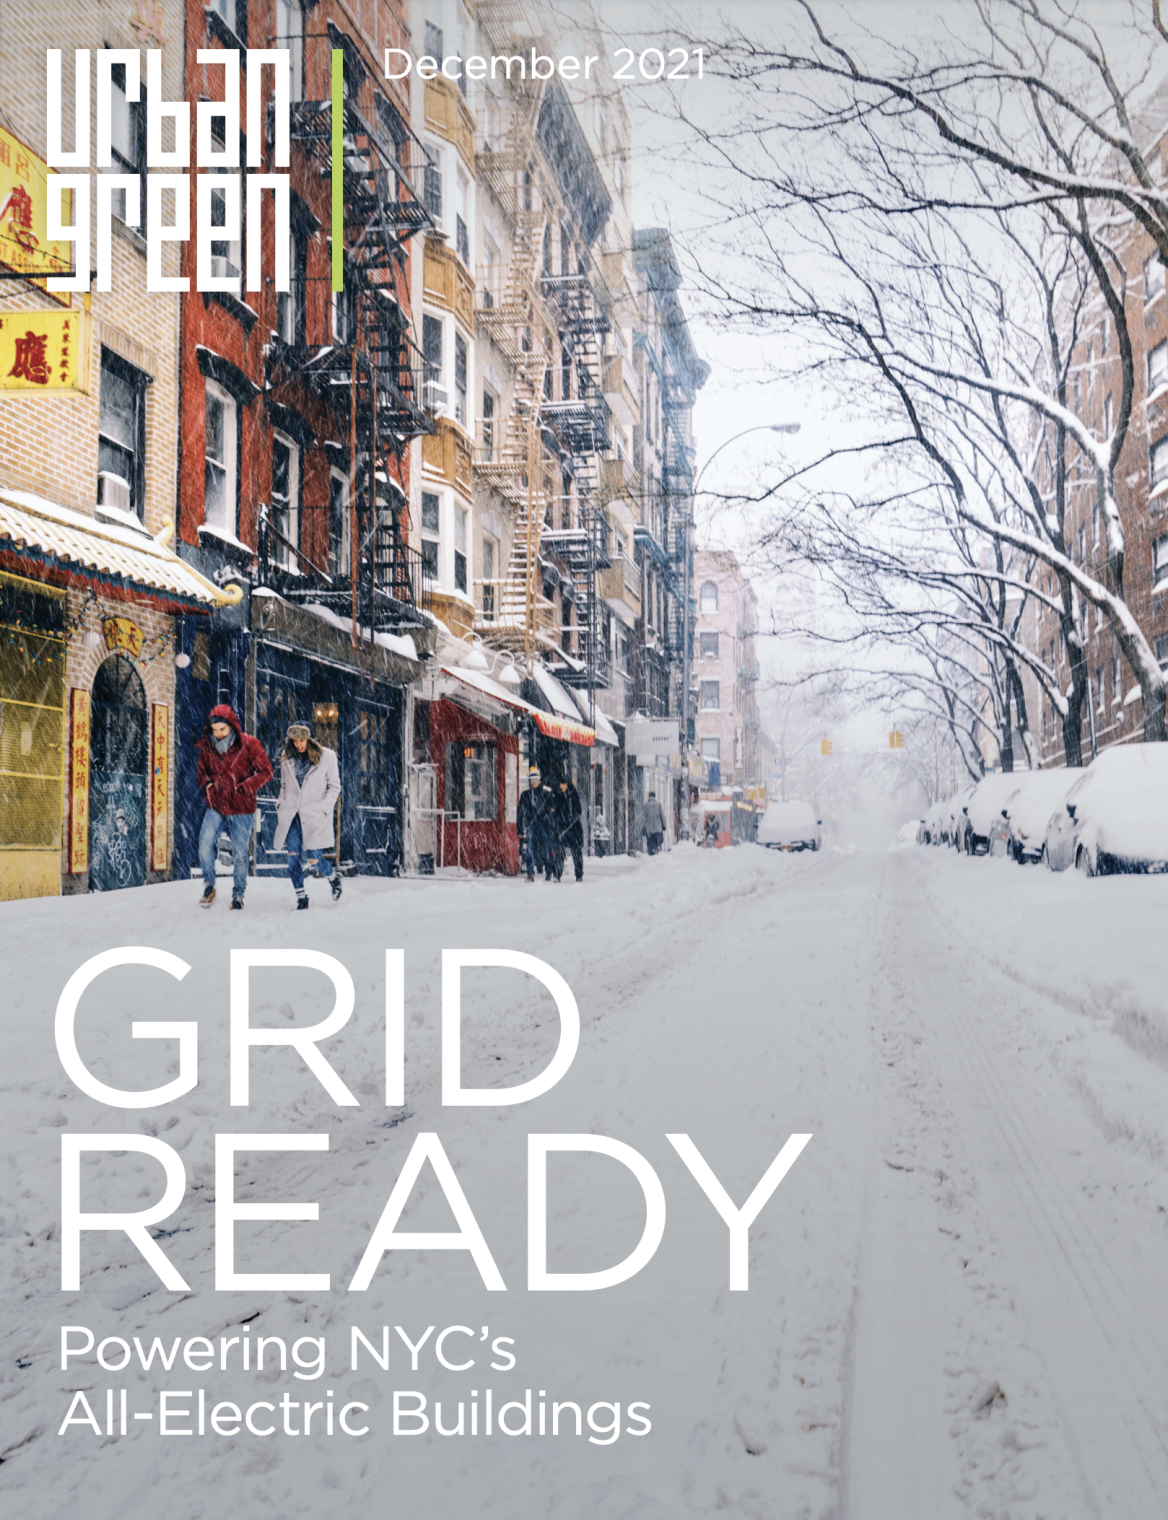 urban green grid ready NYC 